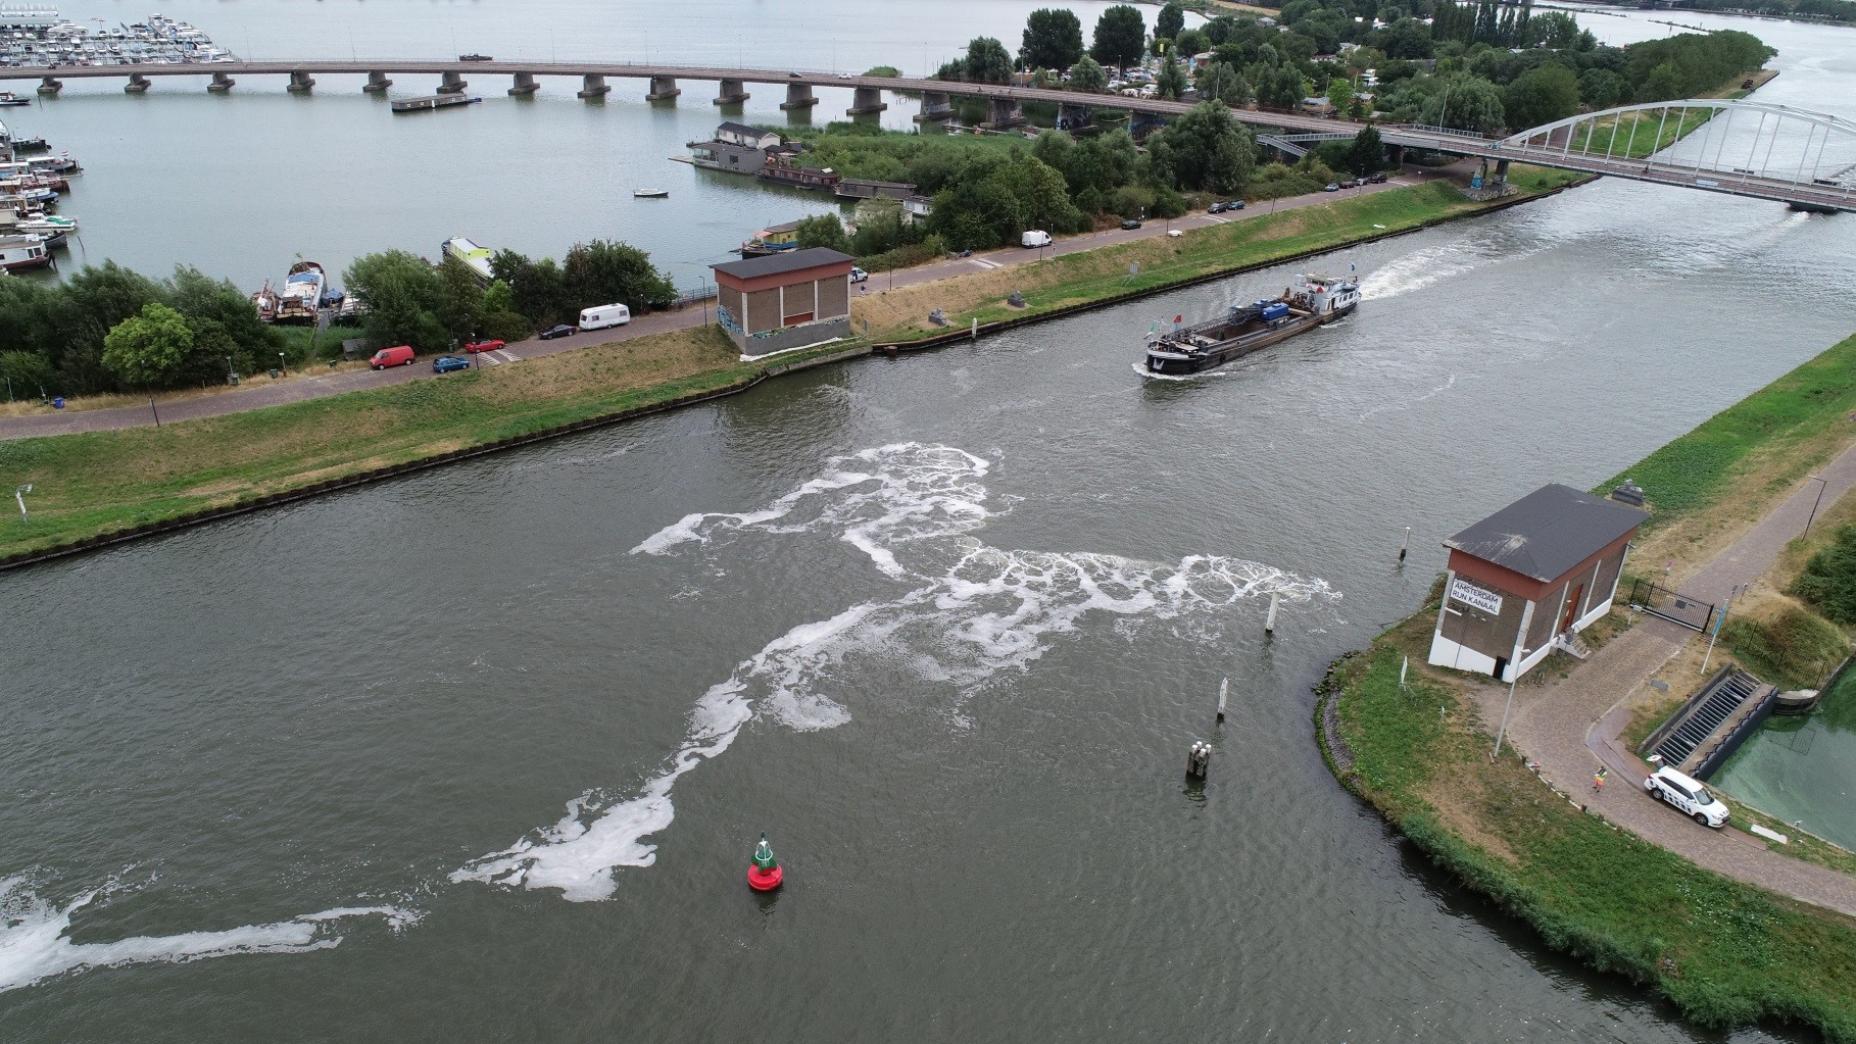 Amsterdam-Rhein-Kanal im Sommer 2018/Amsterdam-Rhine Channel in summer 2018